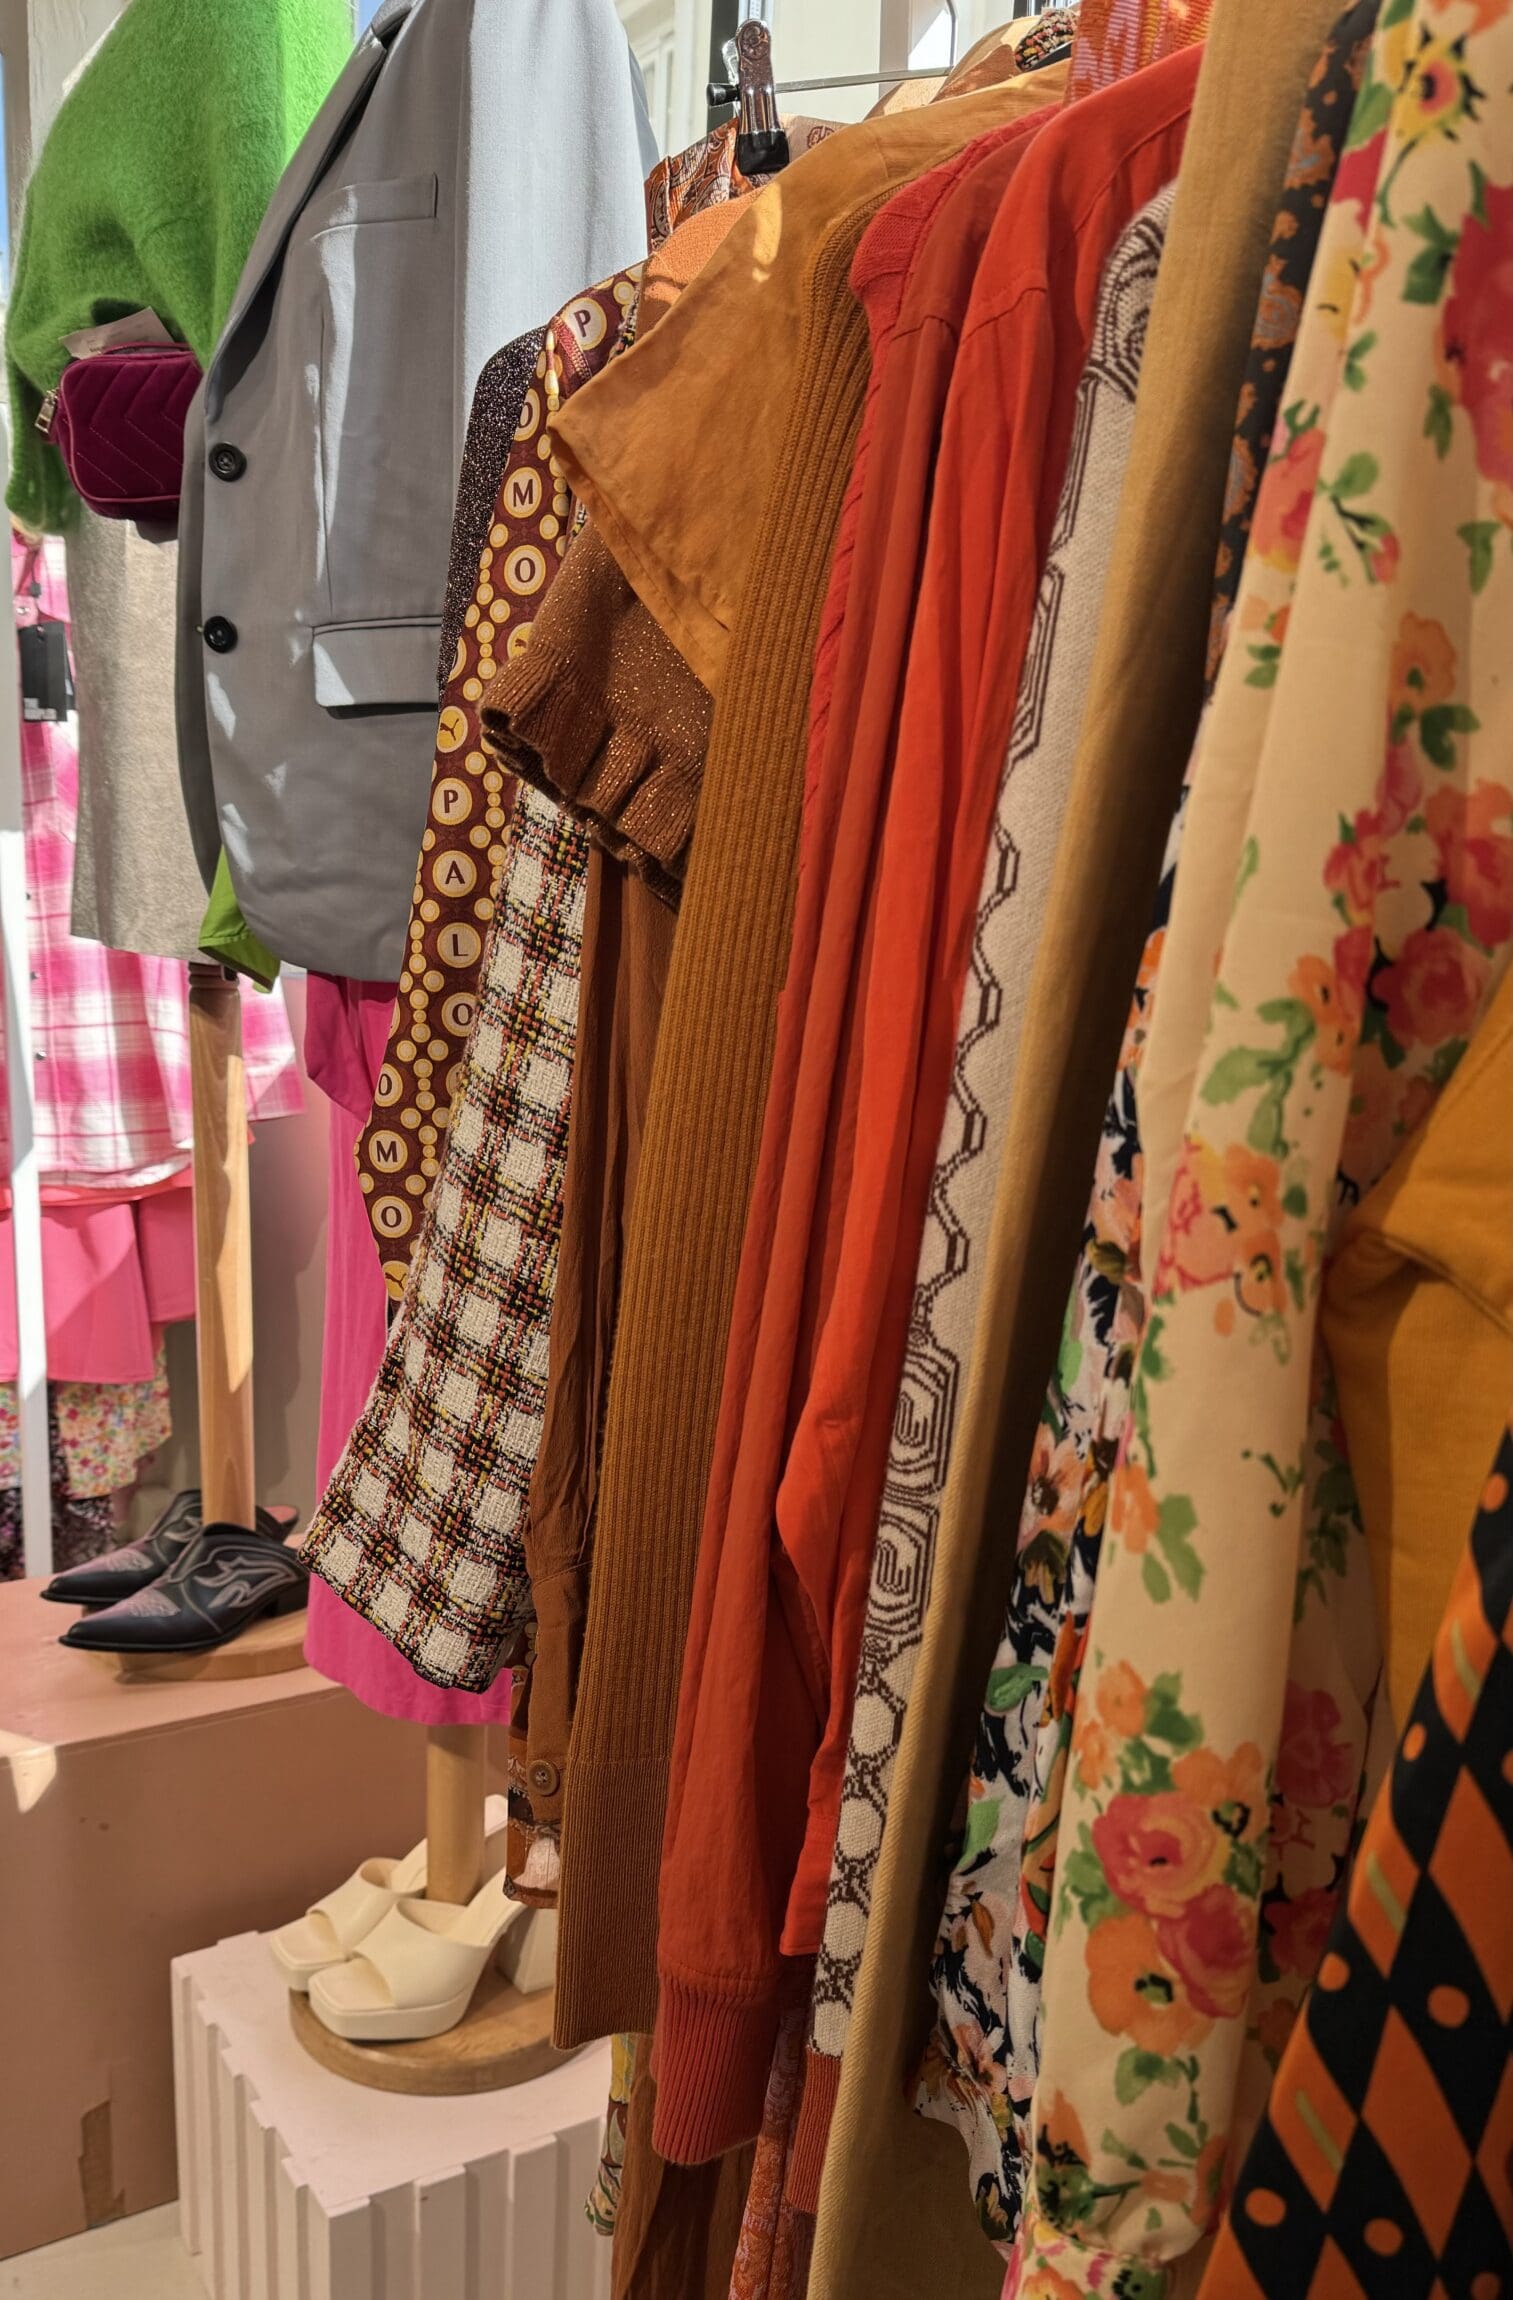 The best vintage shops in Paris | The colourful clothing rails of La Frange à l’Enverse